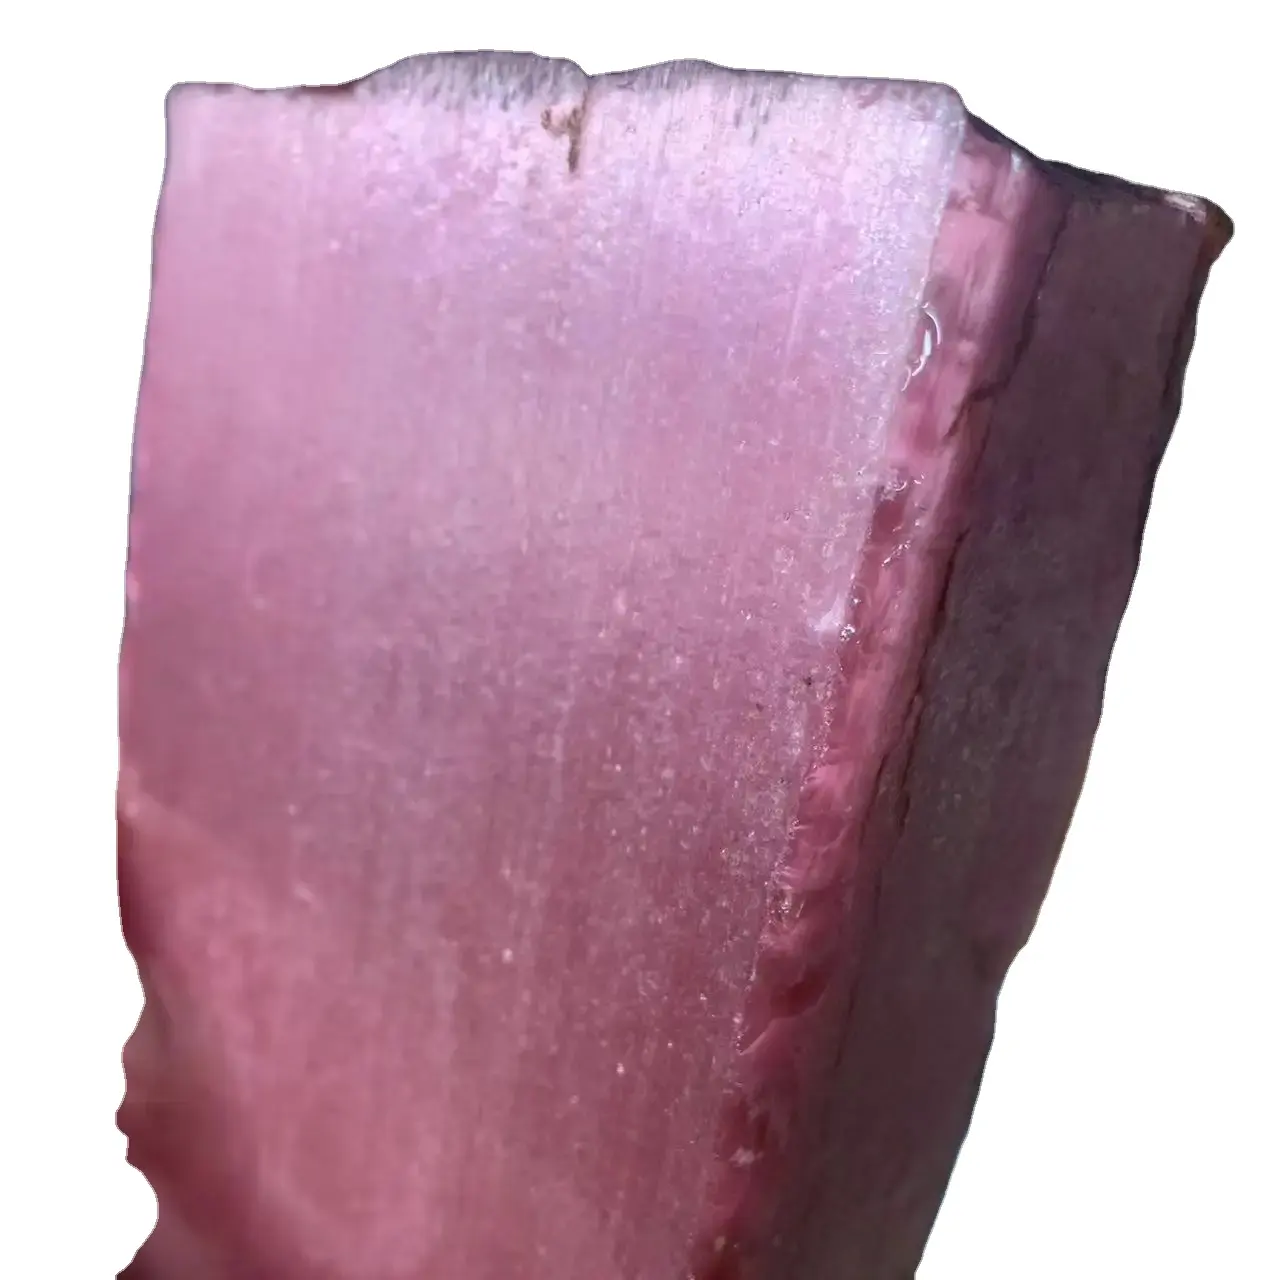 Cina all'ingrosso gemma artificiale rosa rossa occhio di gatto rosa rubino Aubao pietra grezza materiali per gioielli